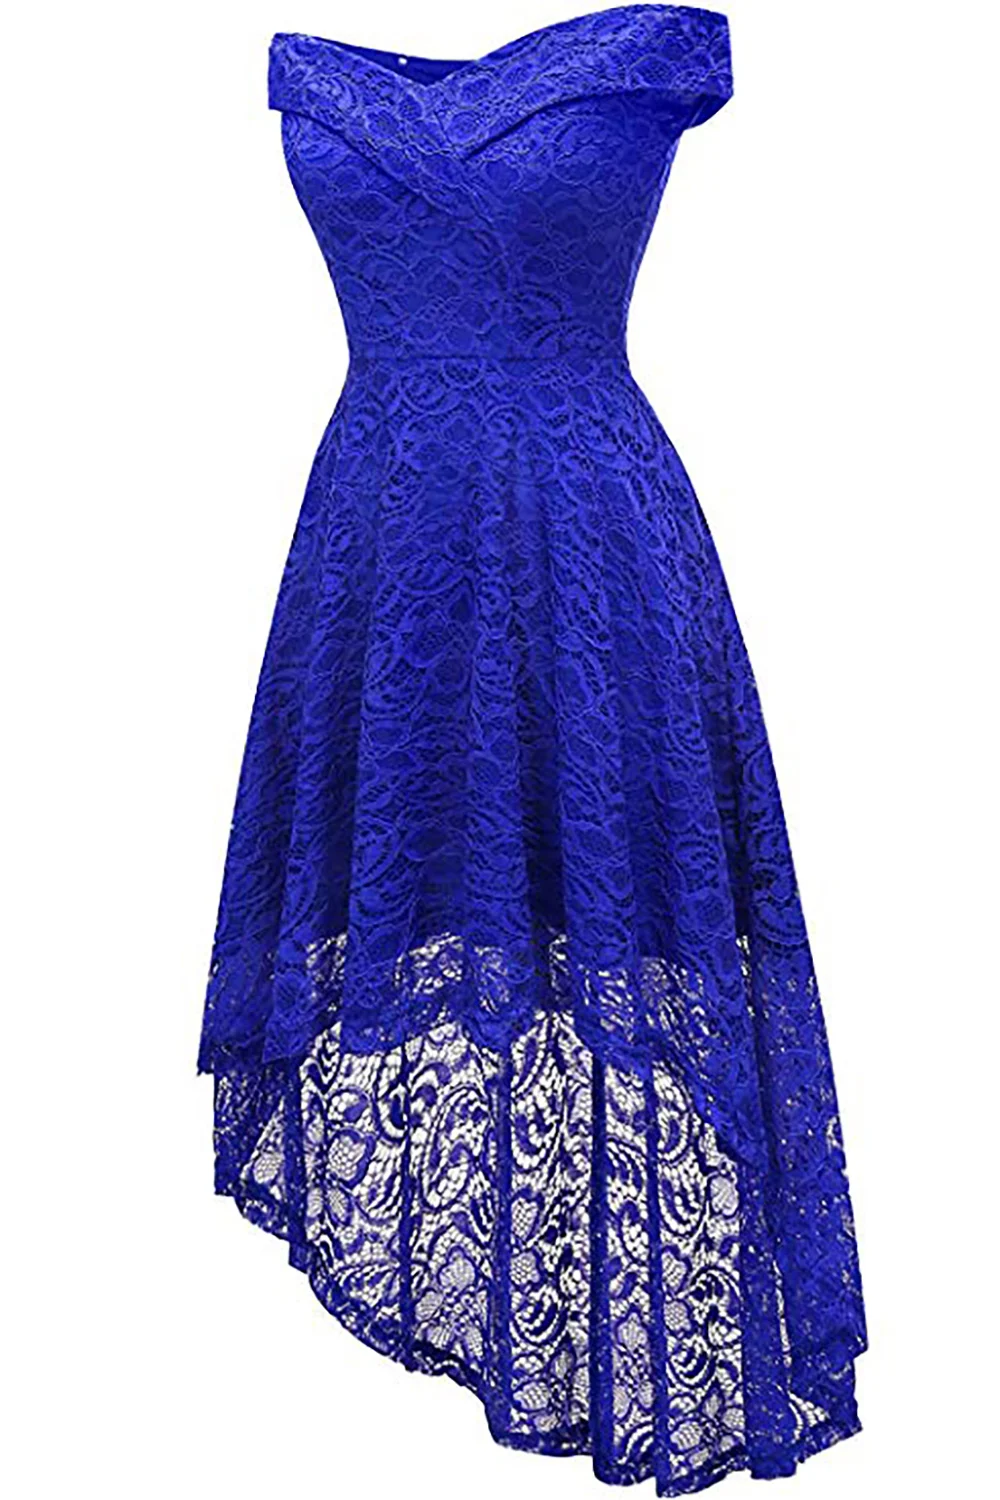 Асимметричный халат De Soiree кружевное короткое вечернее платье размера плюс vestido de festa вечерние выпускные платья а-силуэта платье для выпускного вечера